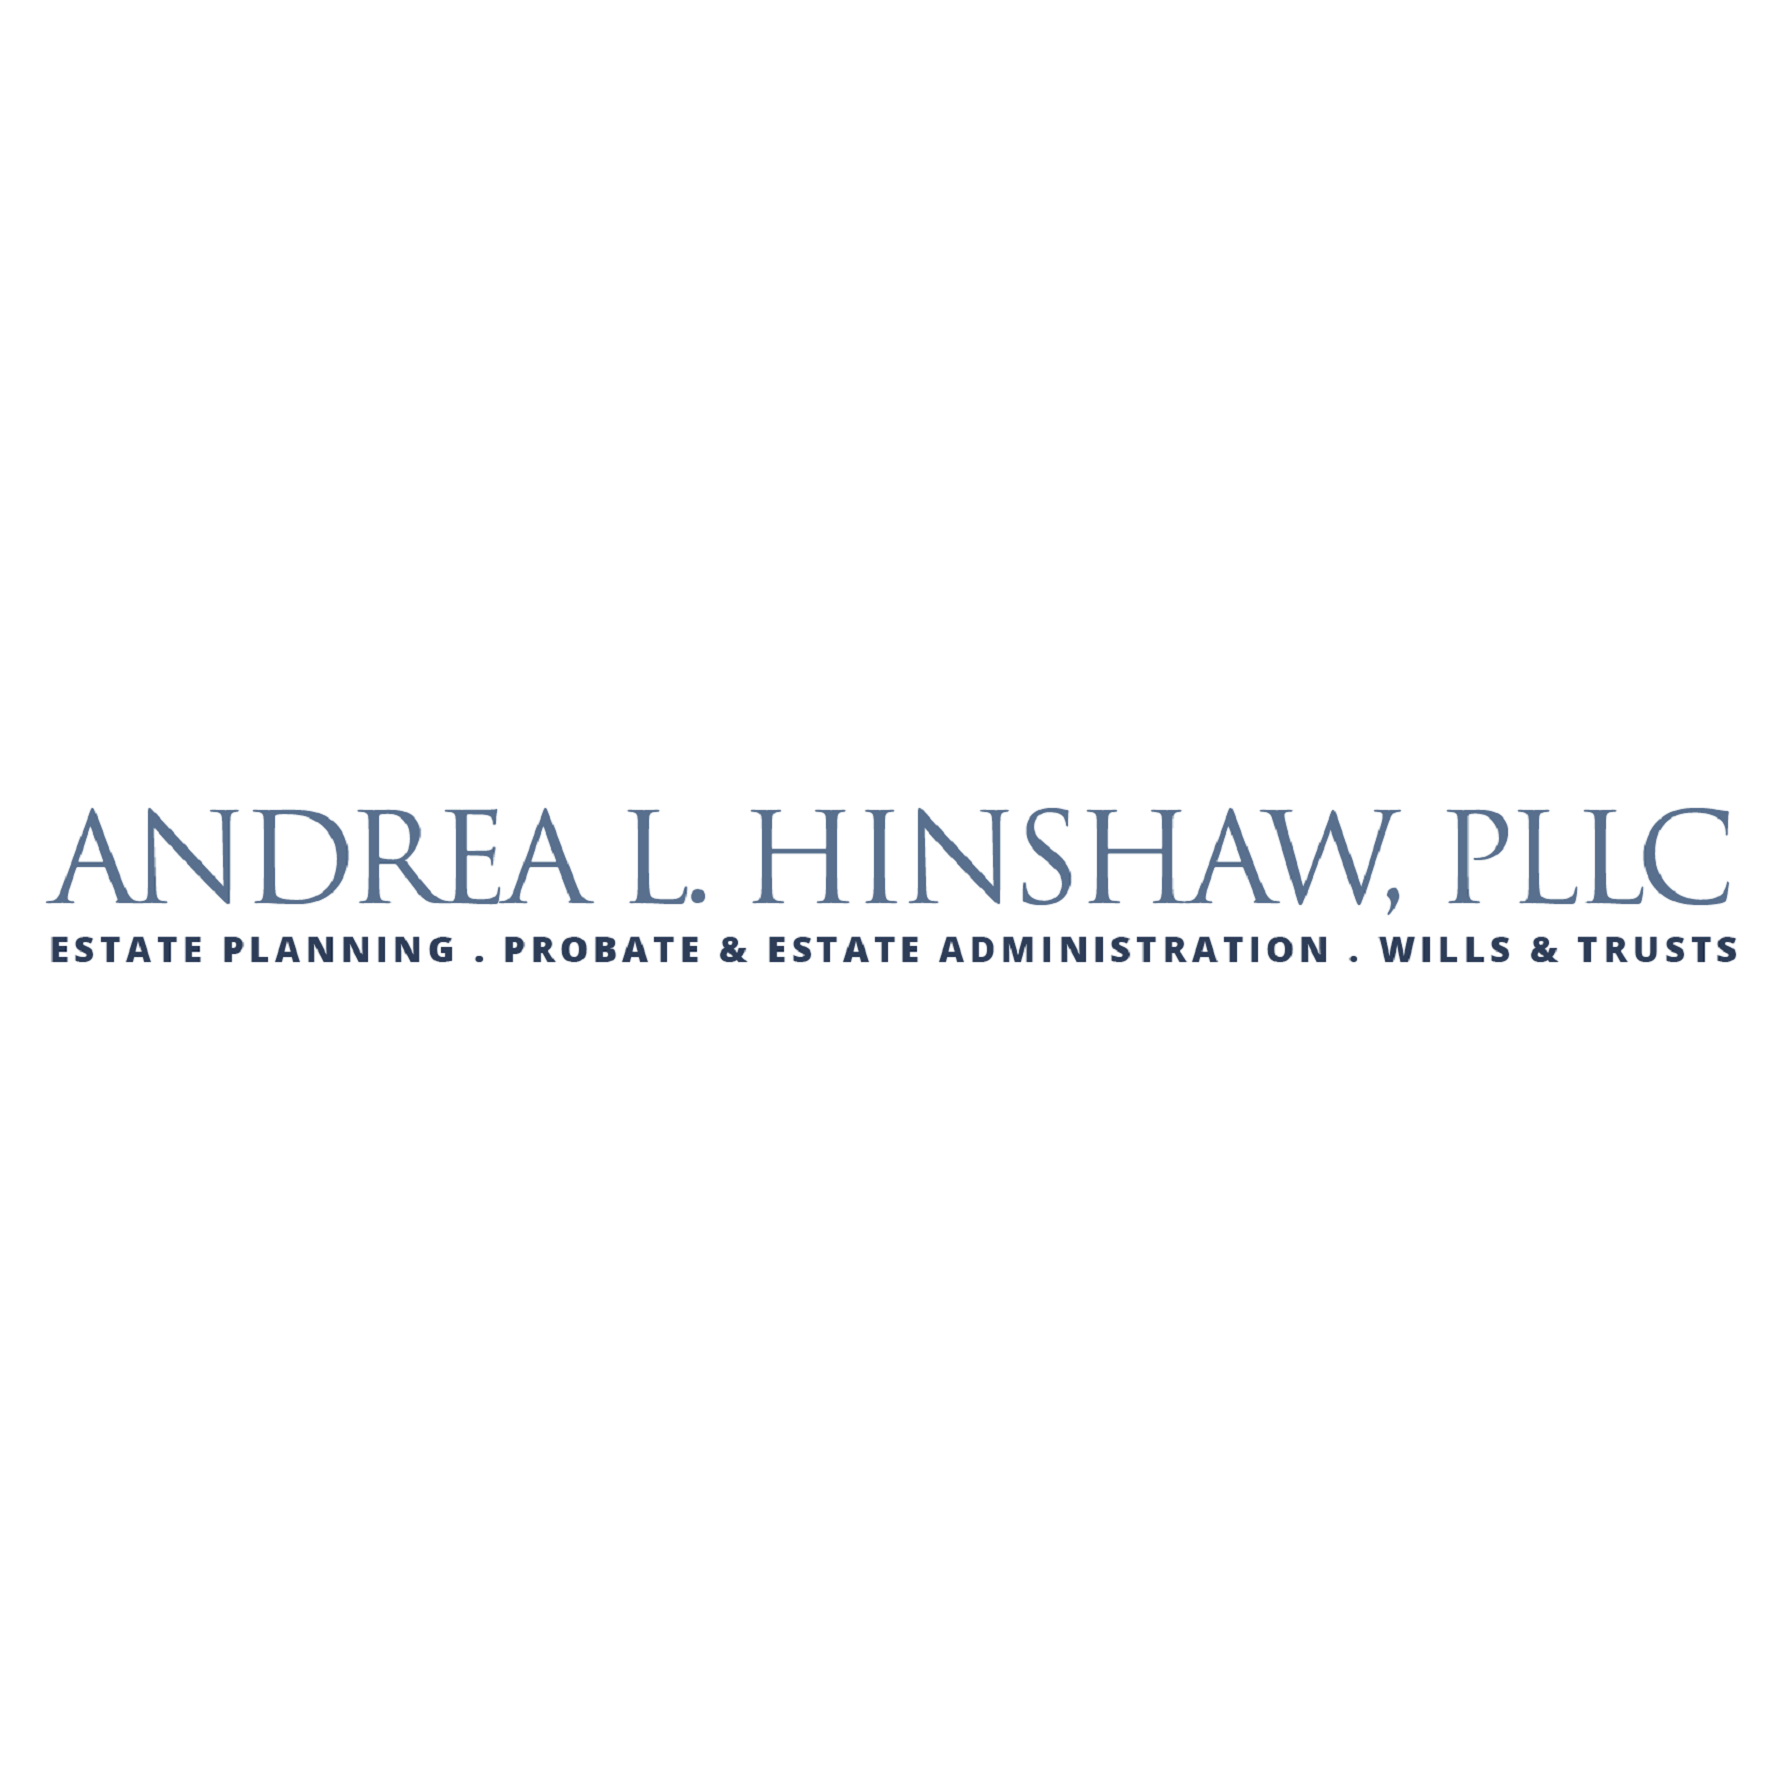 Andrea L. Hinshaw, PLLC